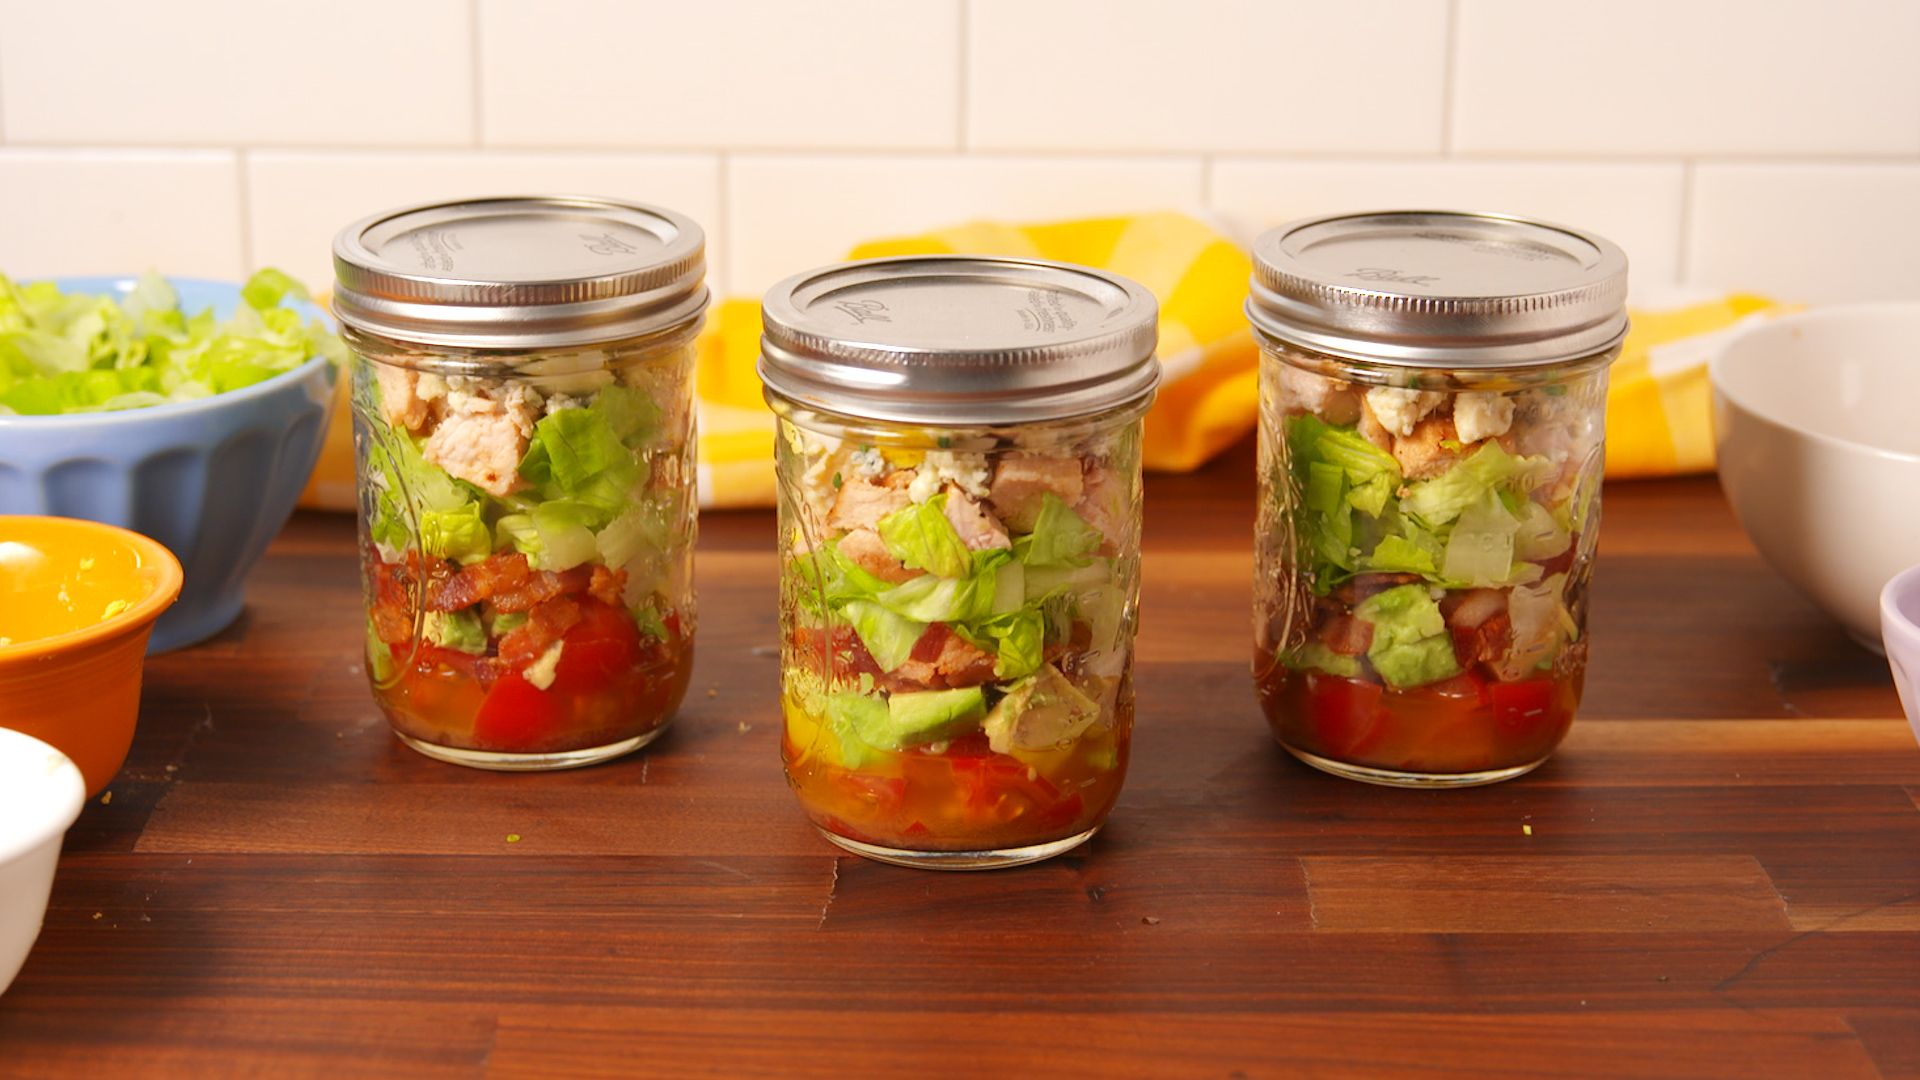 Easy Cobb Salad in a Jar - Weelicious